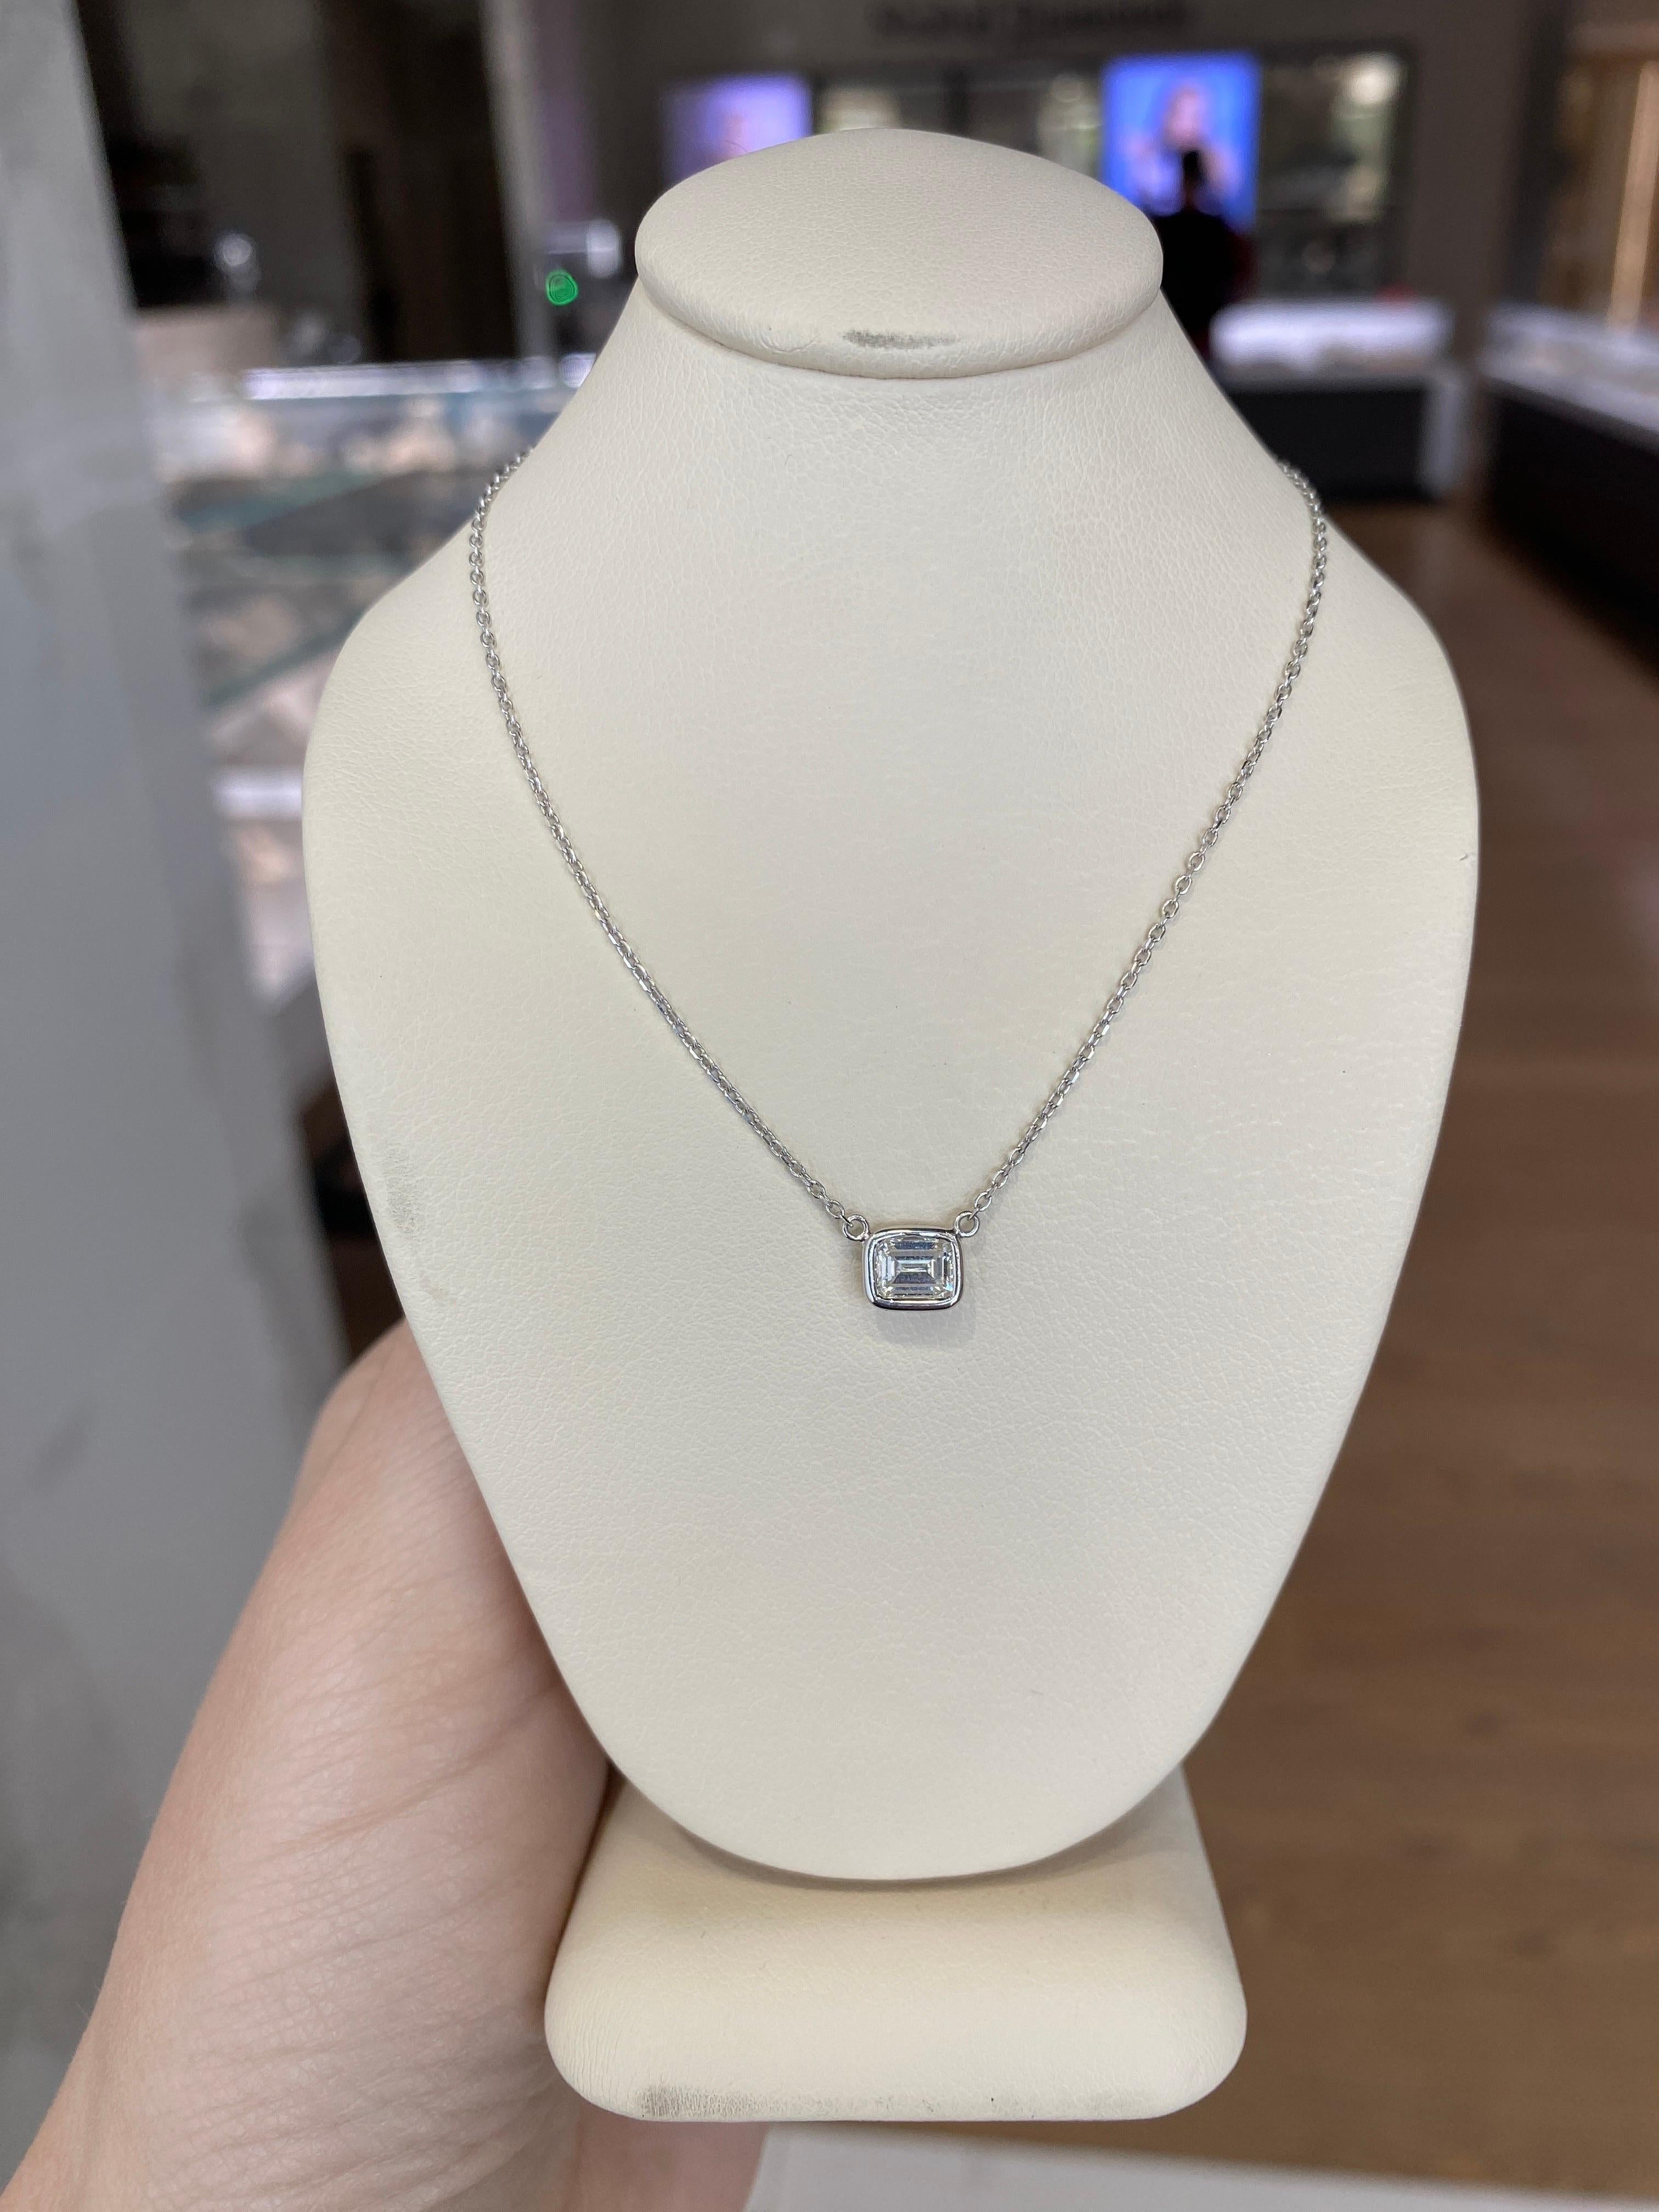 0.44 Carat Natural Emerald Cut Bezel Set Diamond Pendant Necklace 14k White Gold For Sale 13